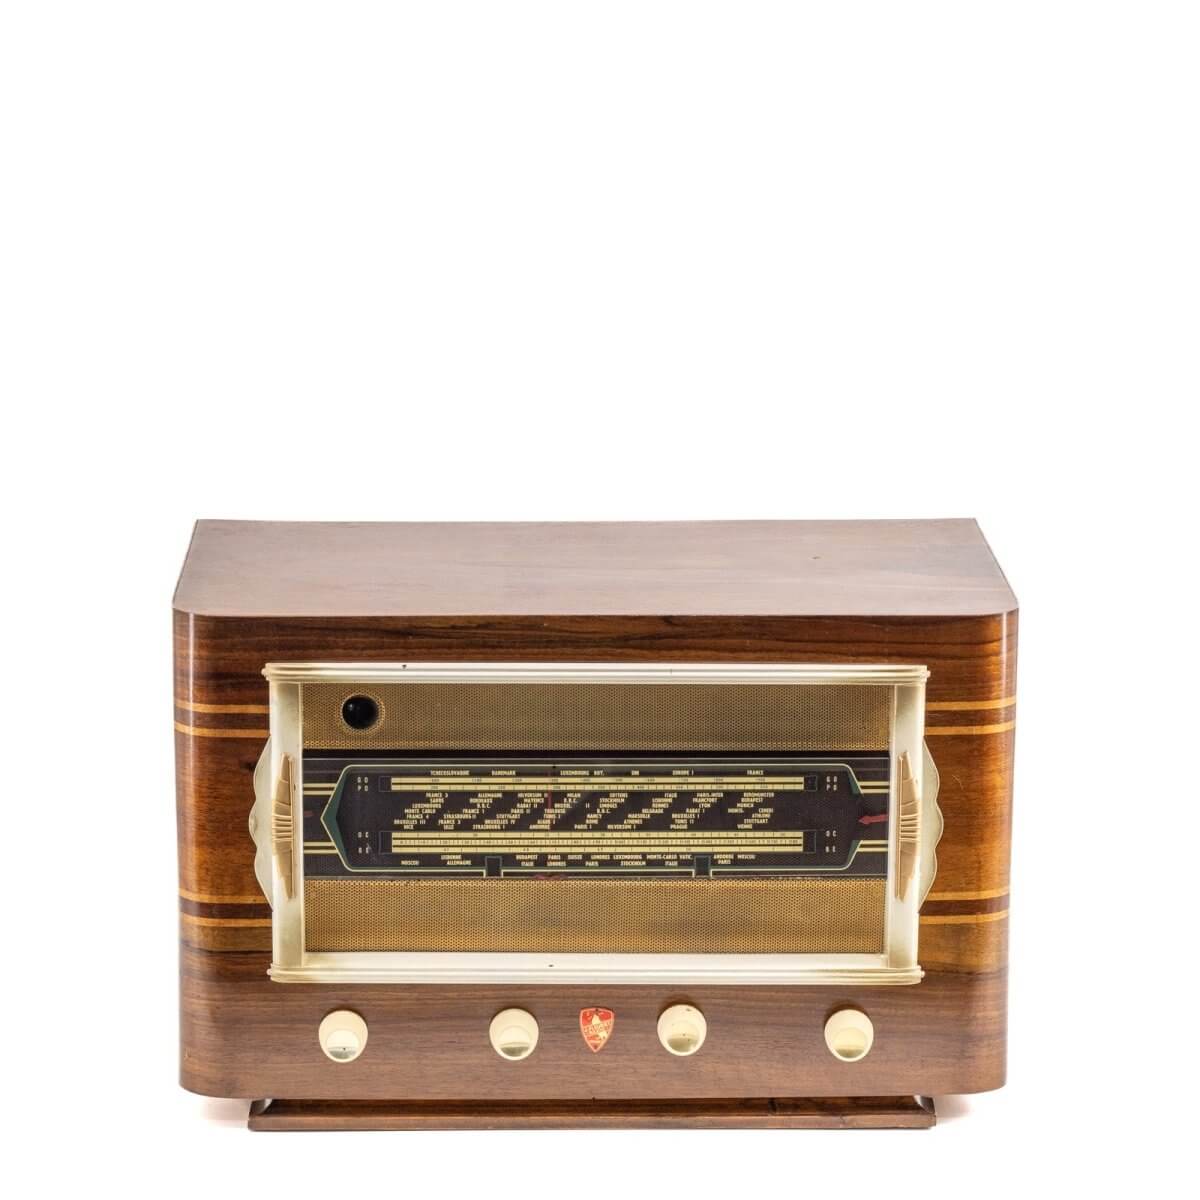 Radio Bluetooth Fleriet Vintage 40’S-A.bsolument-enceintes-et-radios-vintage-bluetooth